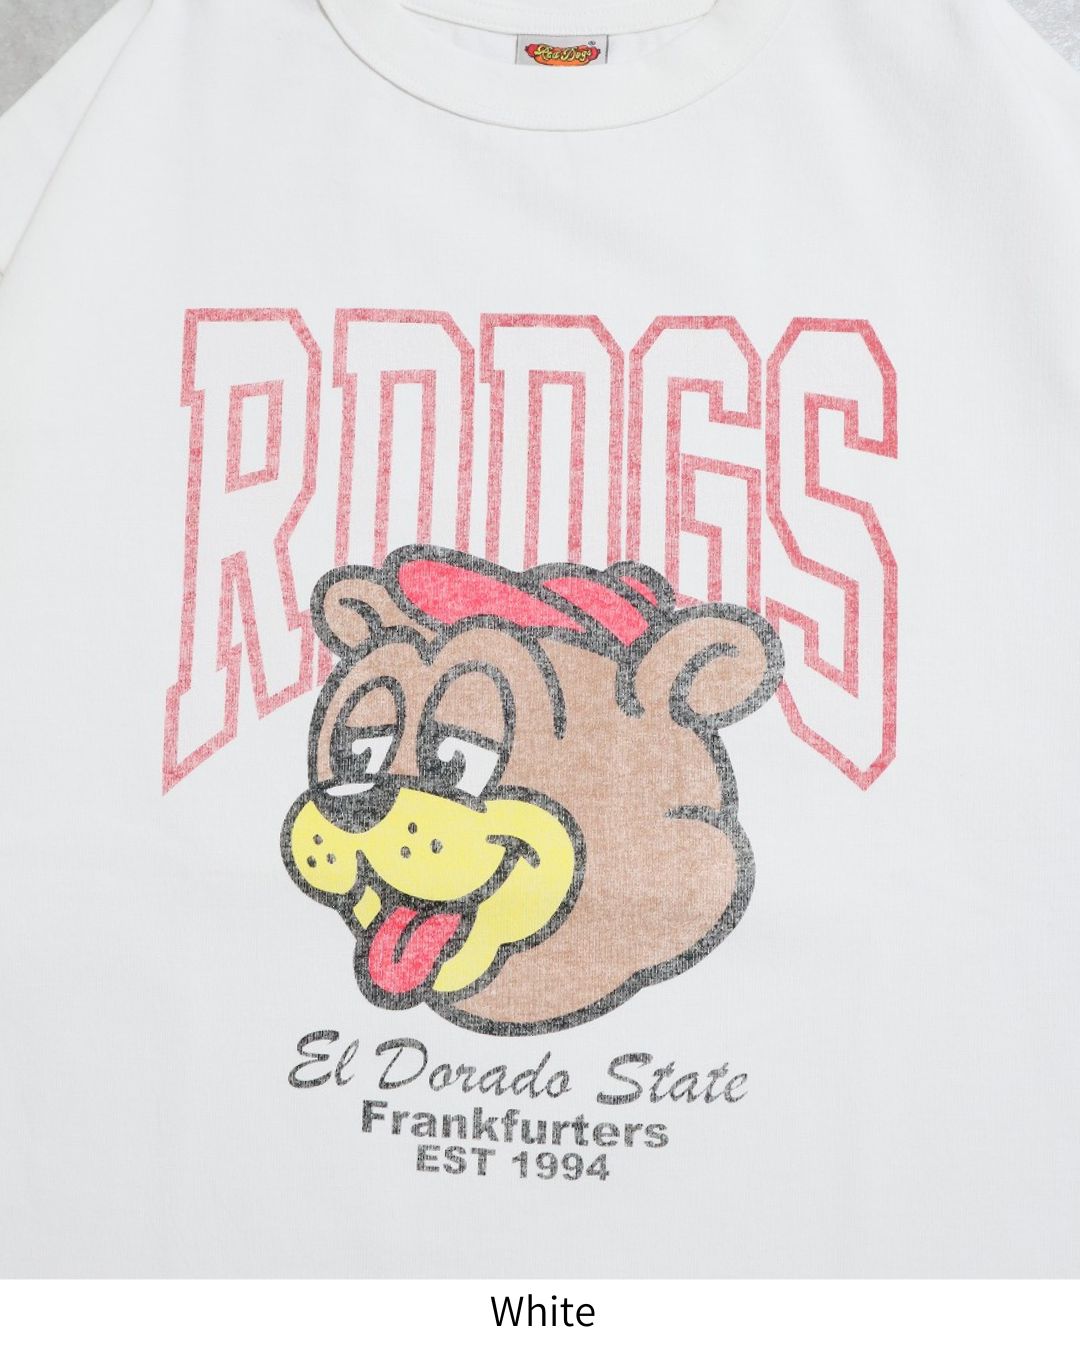 【RedDogs】プリントTシャツ